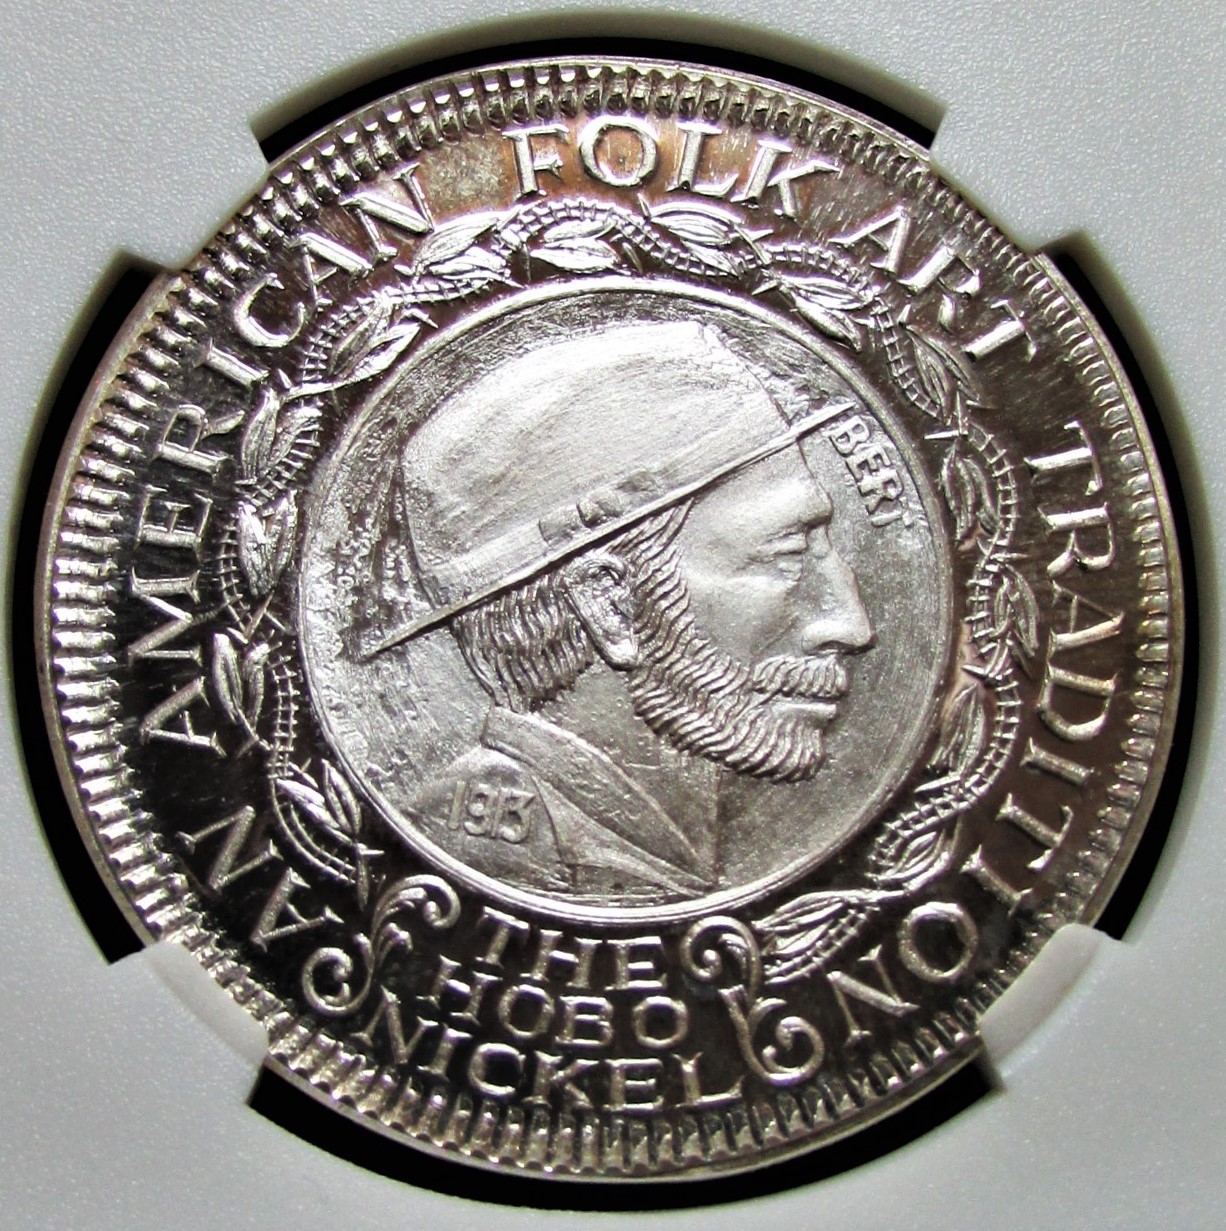 Gallery Mint (RL) - 1995 (MCMXCV) Hobo Medal - reverse #2.jpg